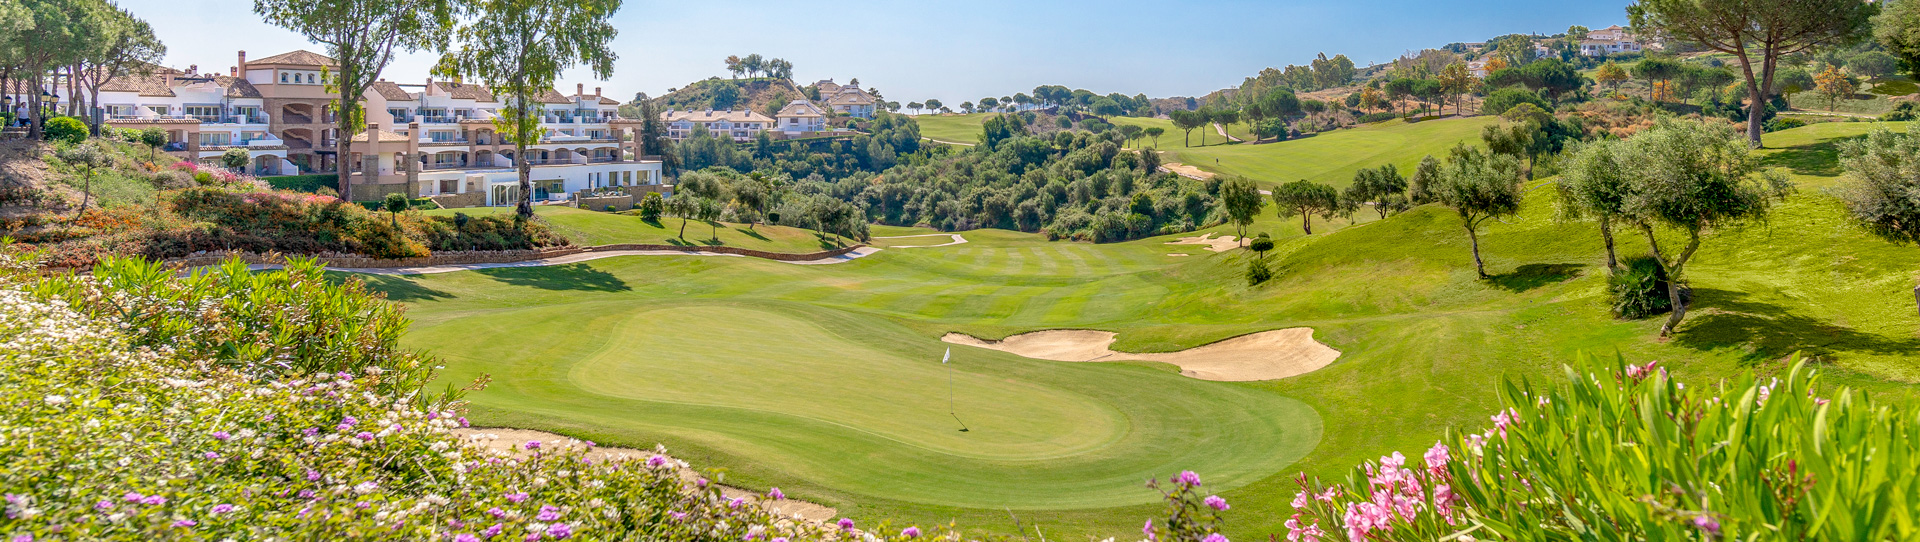 Spain golf courses - La Cala Asia - Photo 1